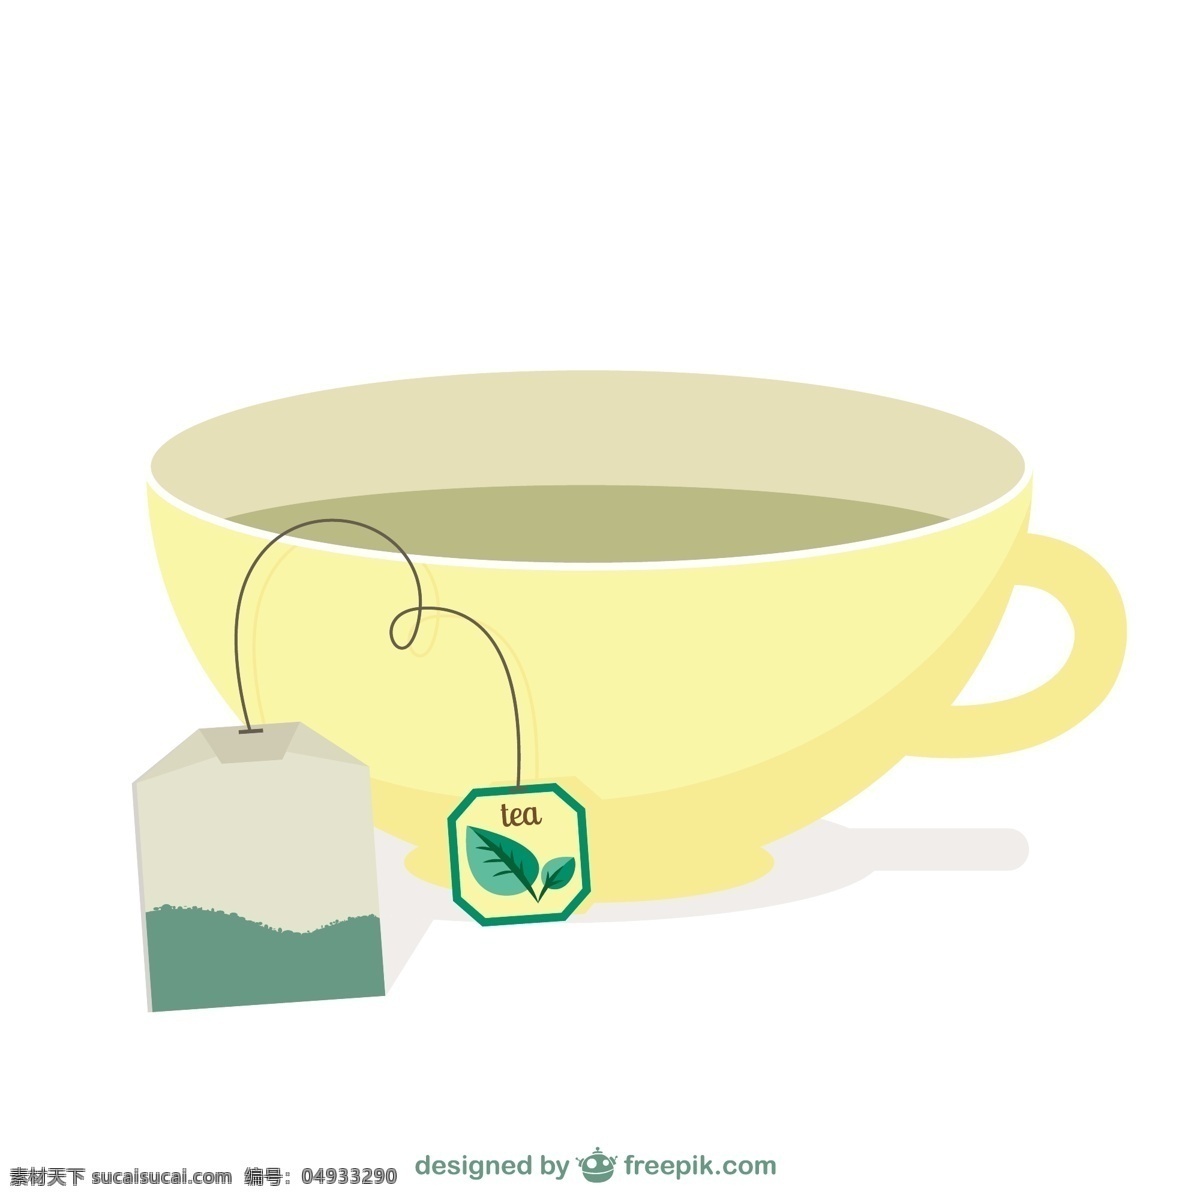 茶袋和杯向量 茶 袋子 杯 茶杯 茶袋 白色